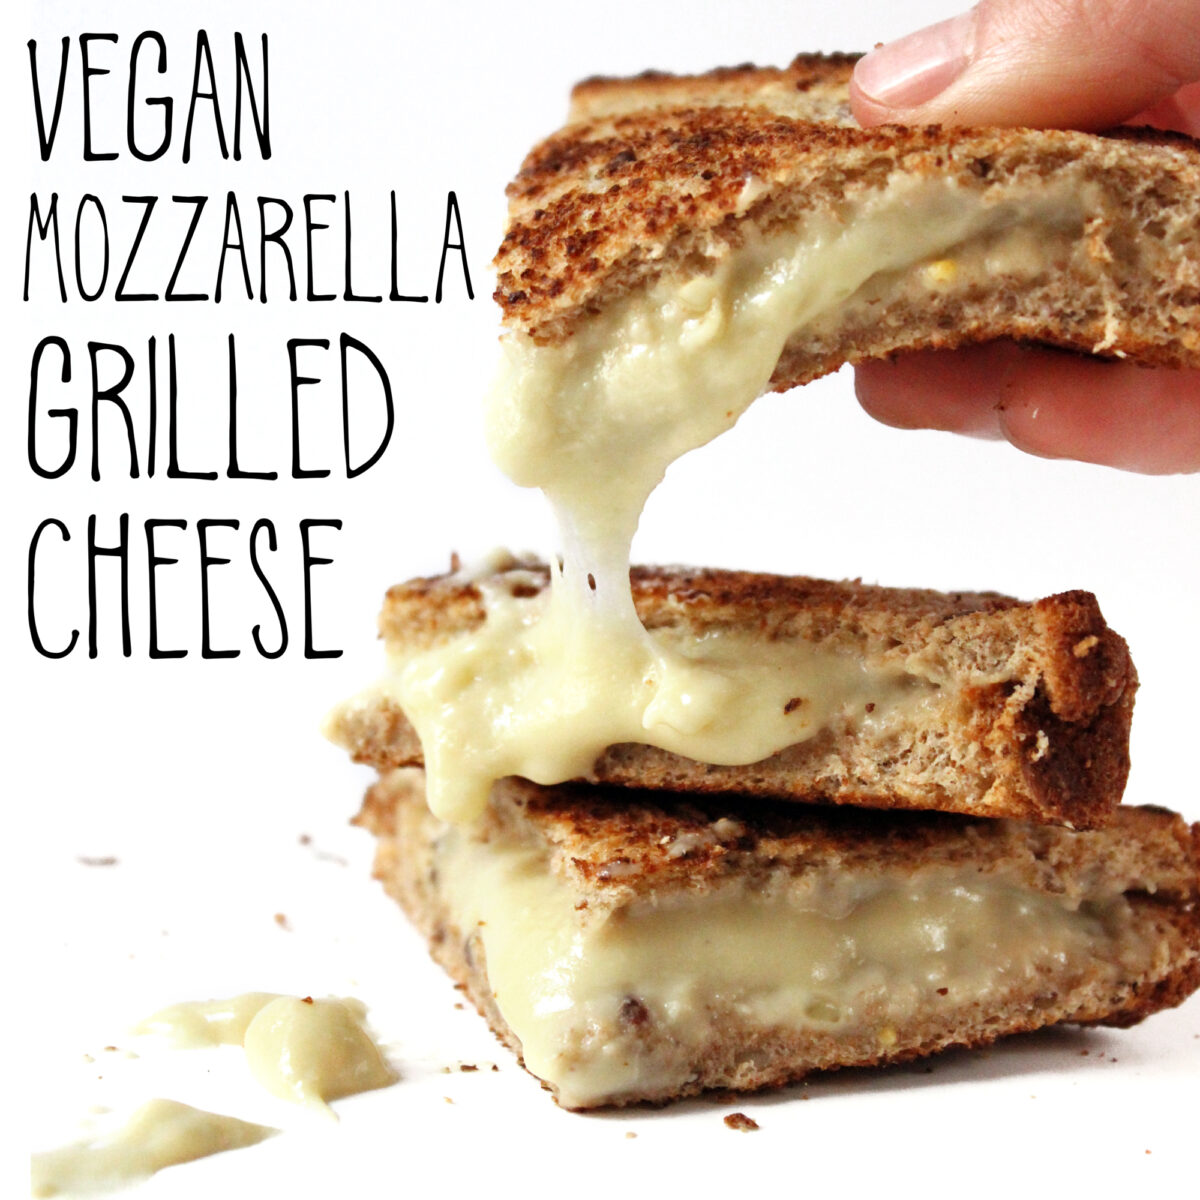 Vegan Mozzarella Grilled Cheese